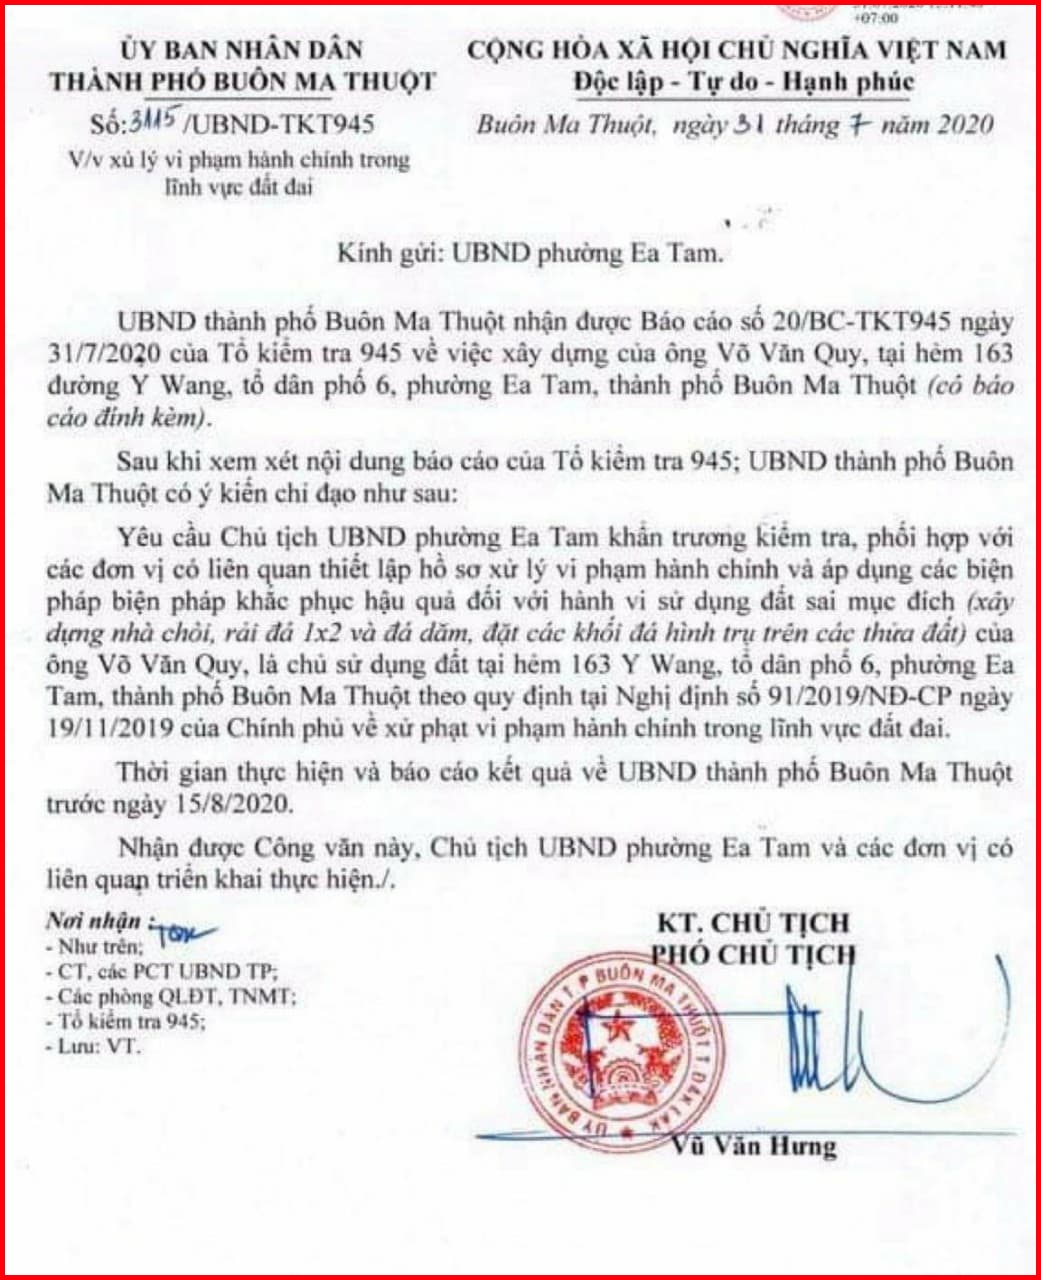 TP Buôn Ma Thuột, tỉnh Đắk Lắk: Cần làm rõ những dấu hiệu sai phạm ở phường Ea Tam